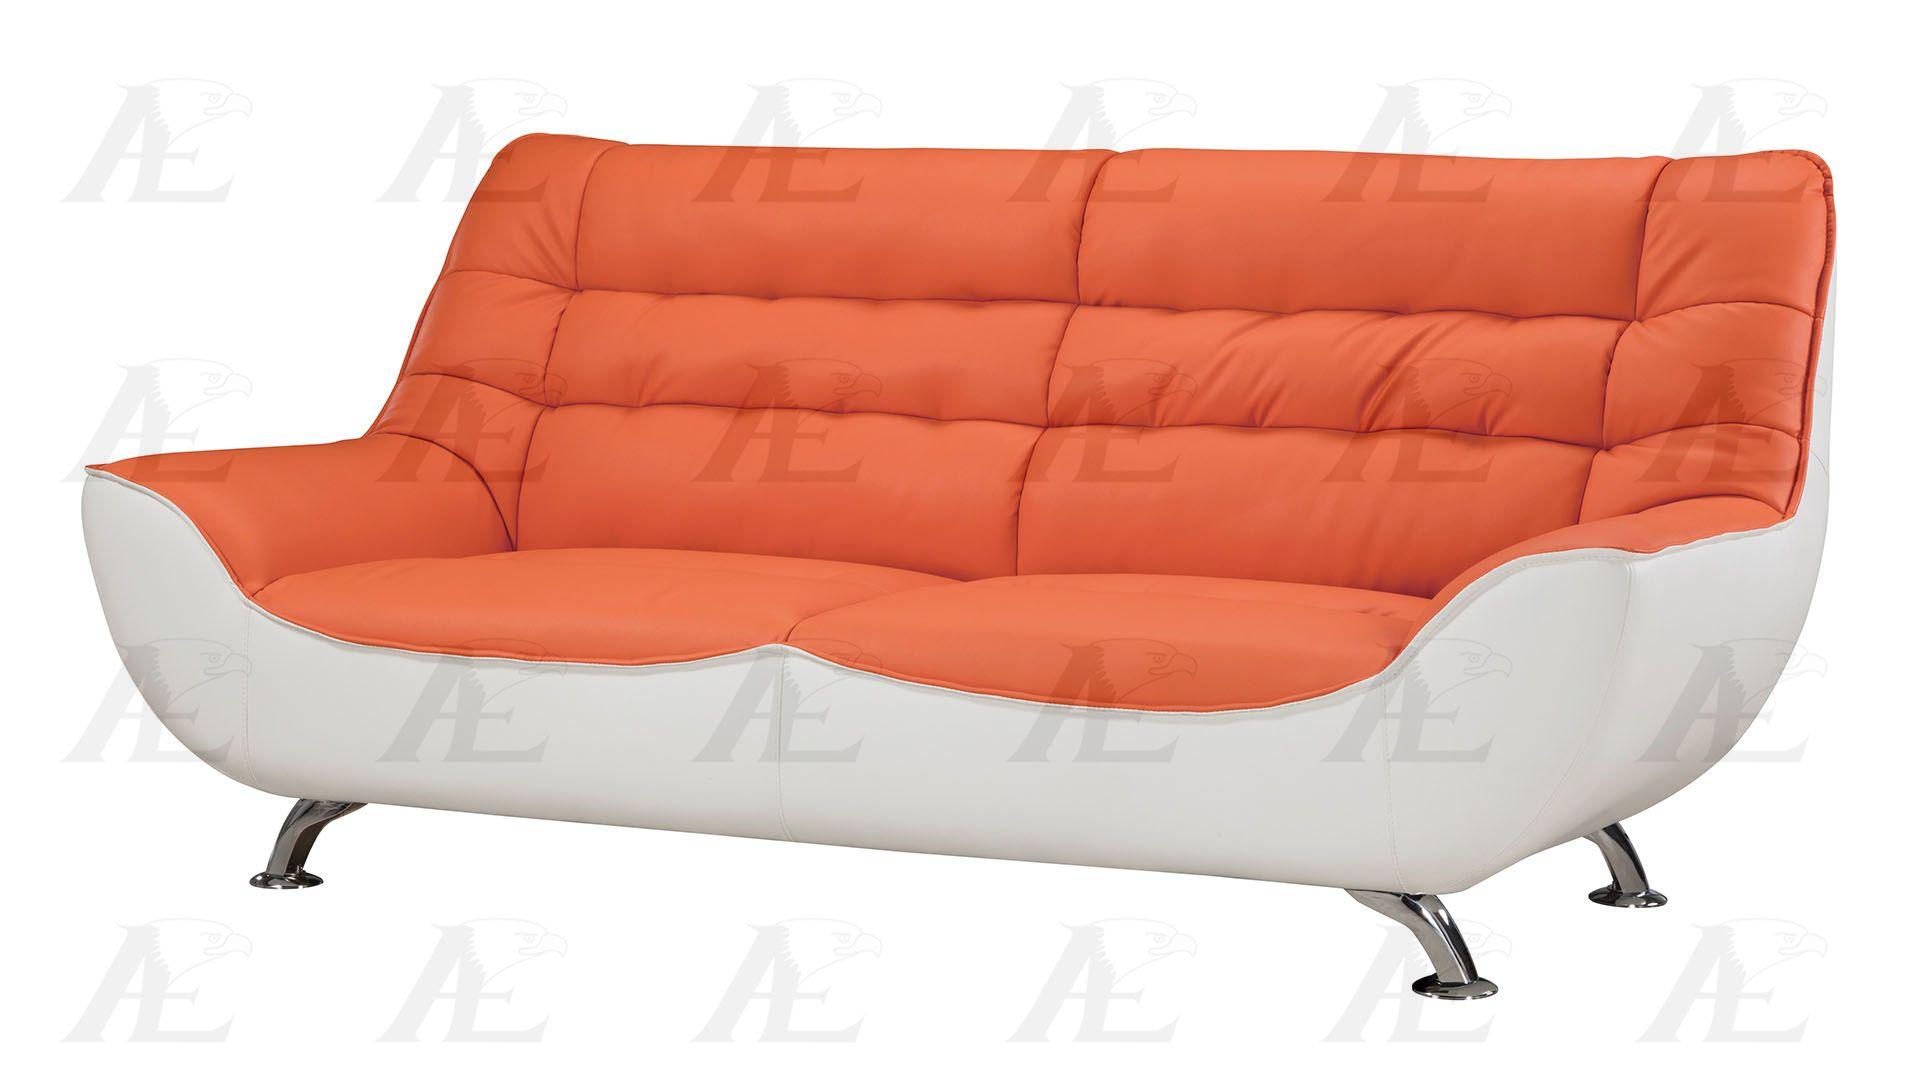 

    
American Eagle Furniture  AE612-ORG.W Orange and White Sofa Bonded Leather Modern
